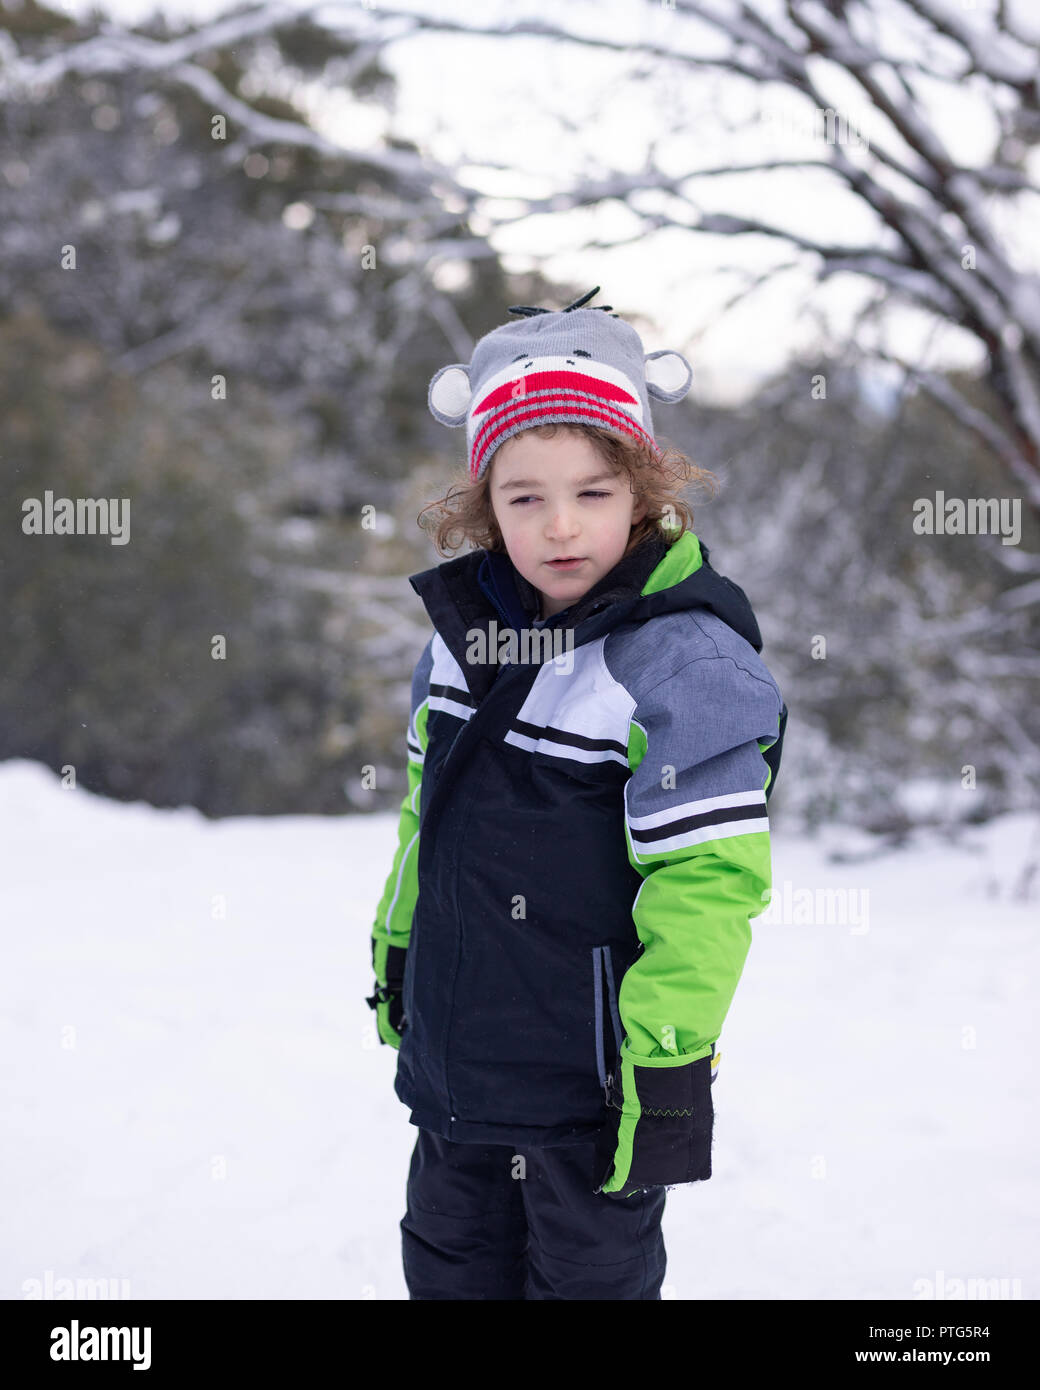 Retrato de un joven en la nieve con un cuestionamiento de la expresión en su rostro. Foto de stock